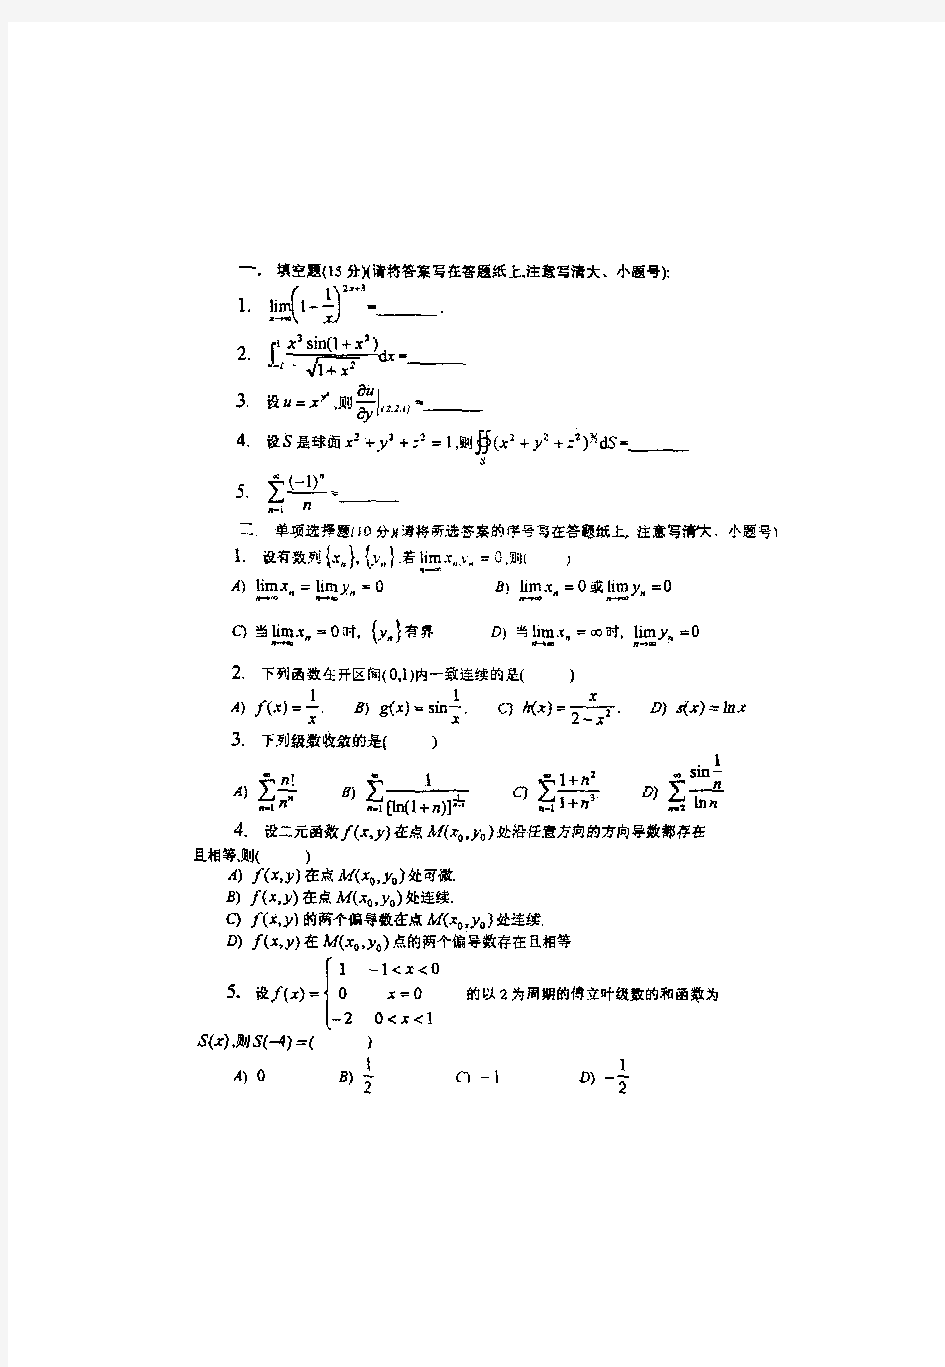 天津大学1999年硕士入学考试试题-数学分析